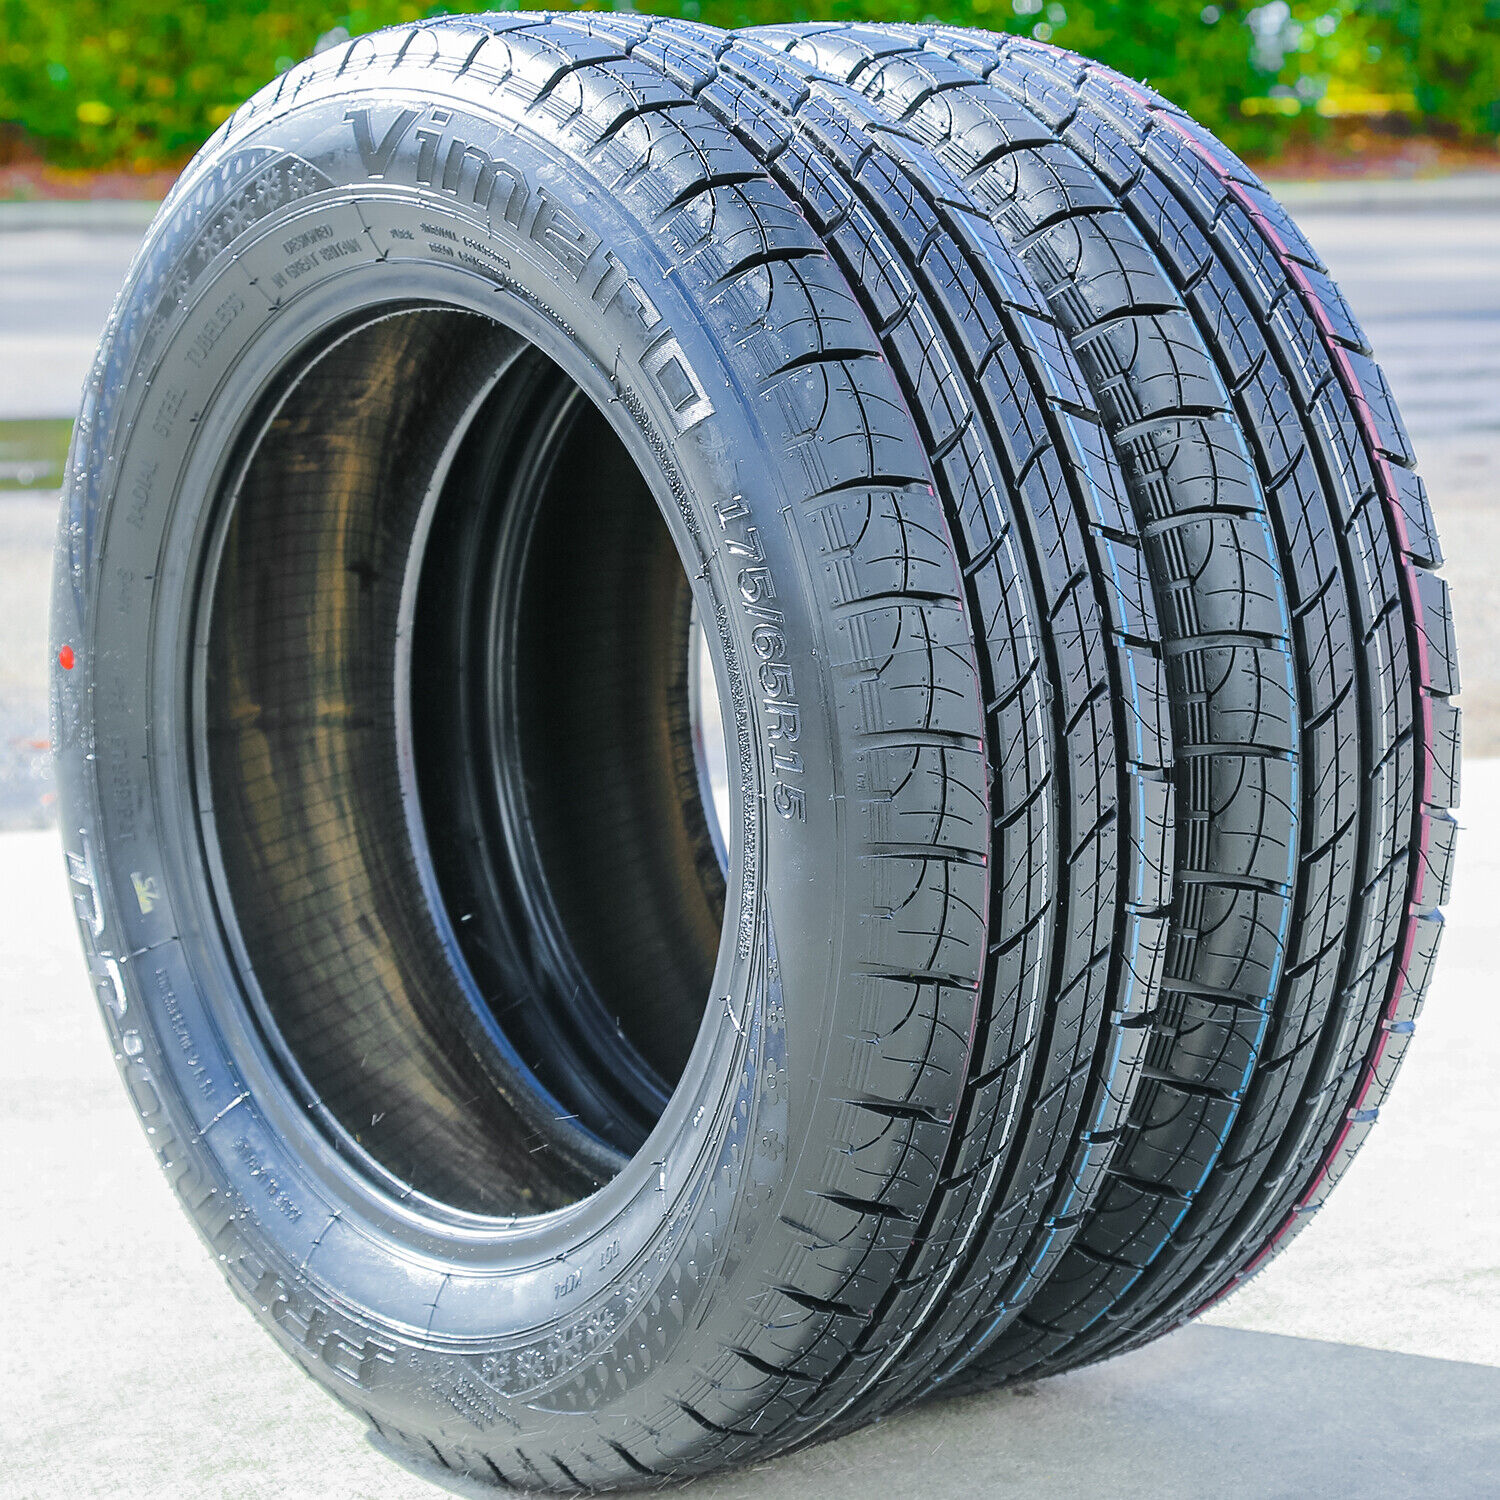 2 New Premiorri Vimero 175/65R15 84H A/S All Season Tires